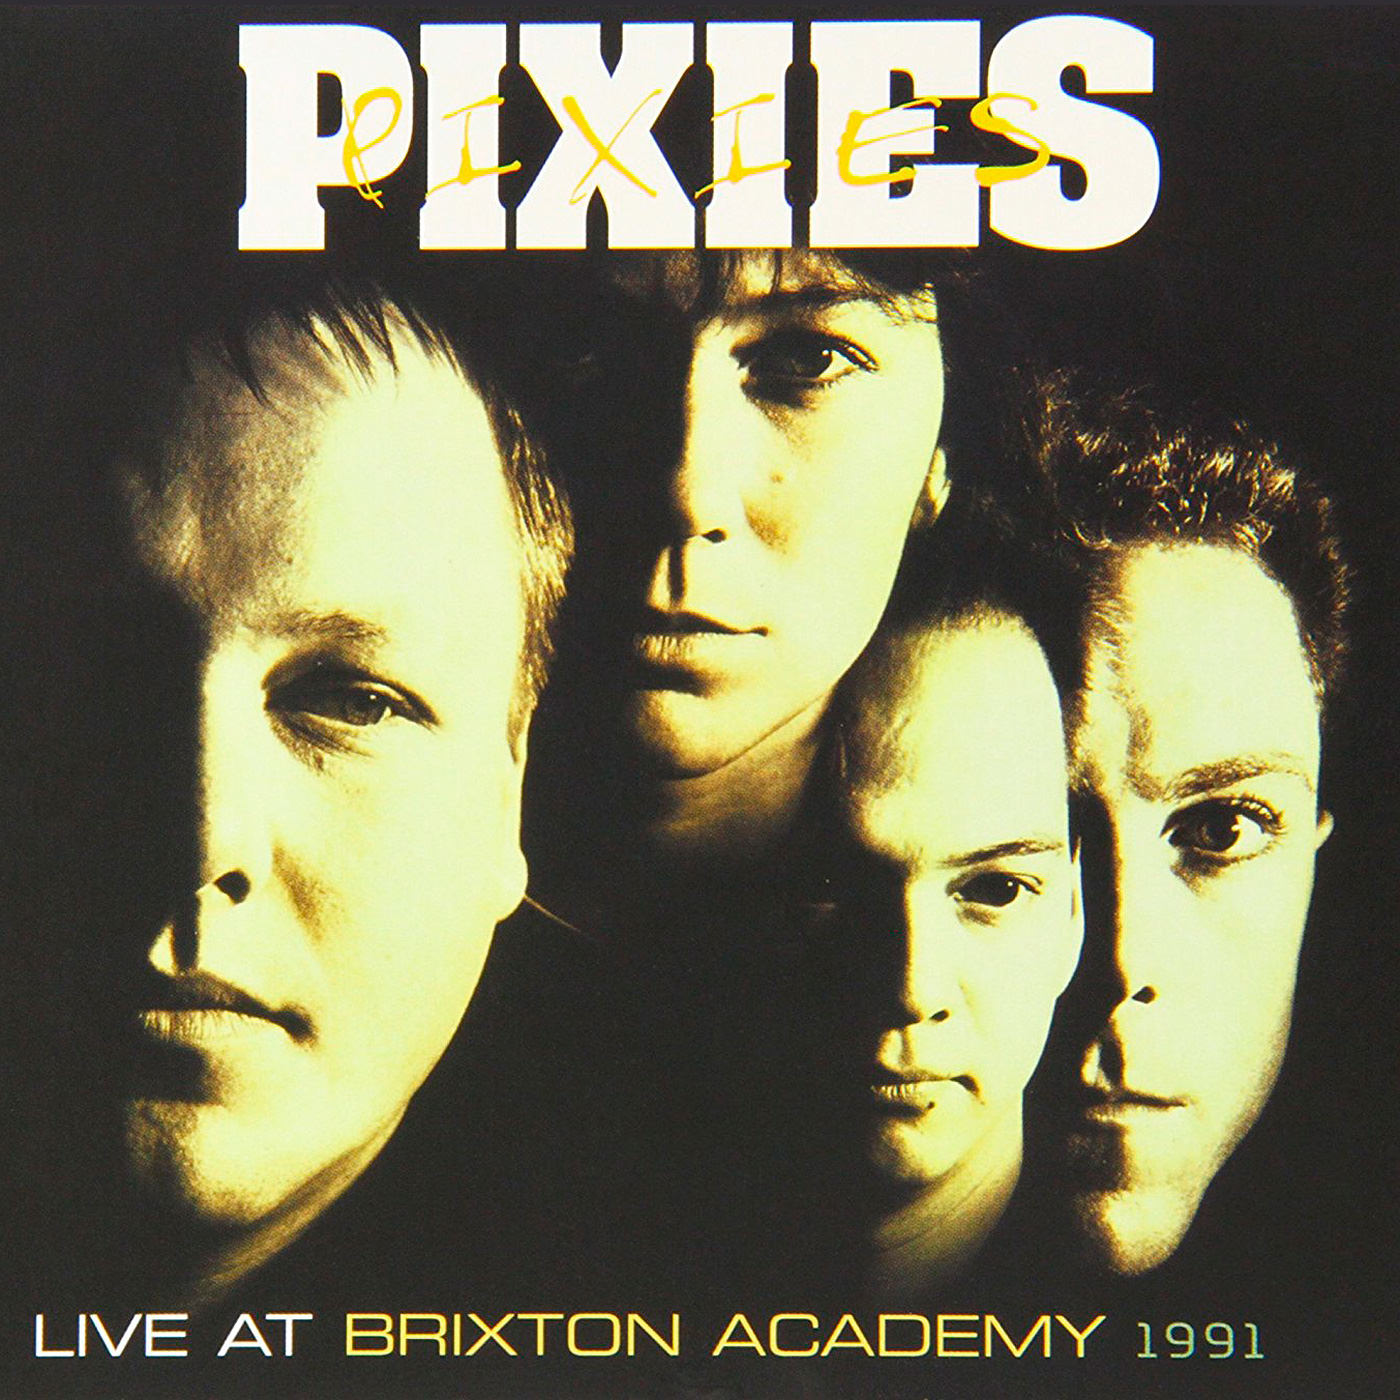 Pixies - Live At The Brixton Academy 1991 (2009) [FLAC 24bit/96kHz]